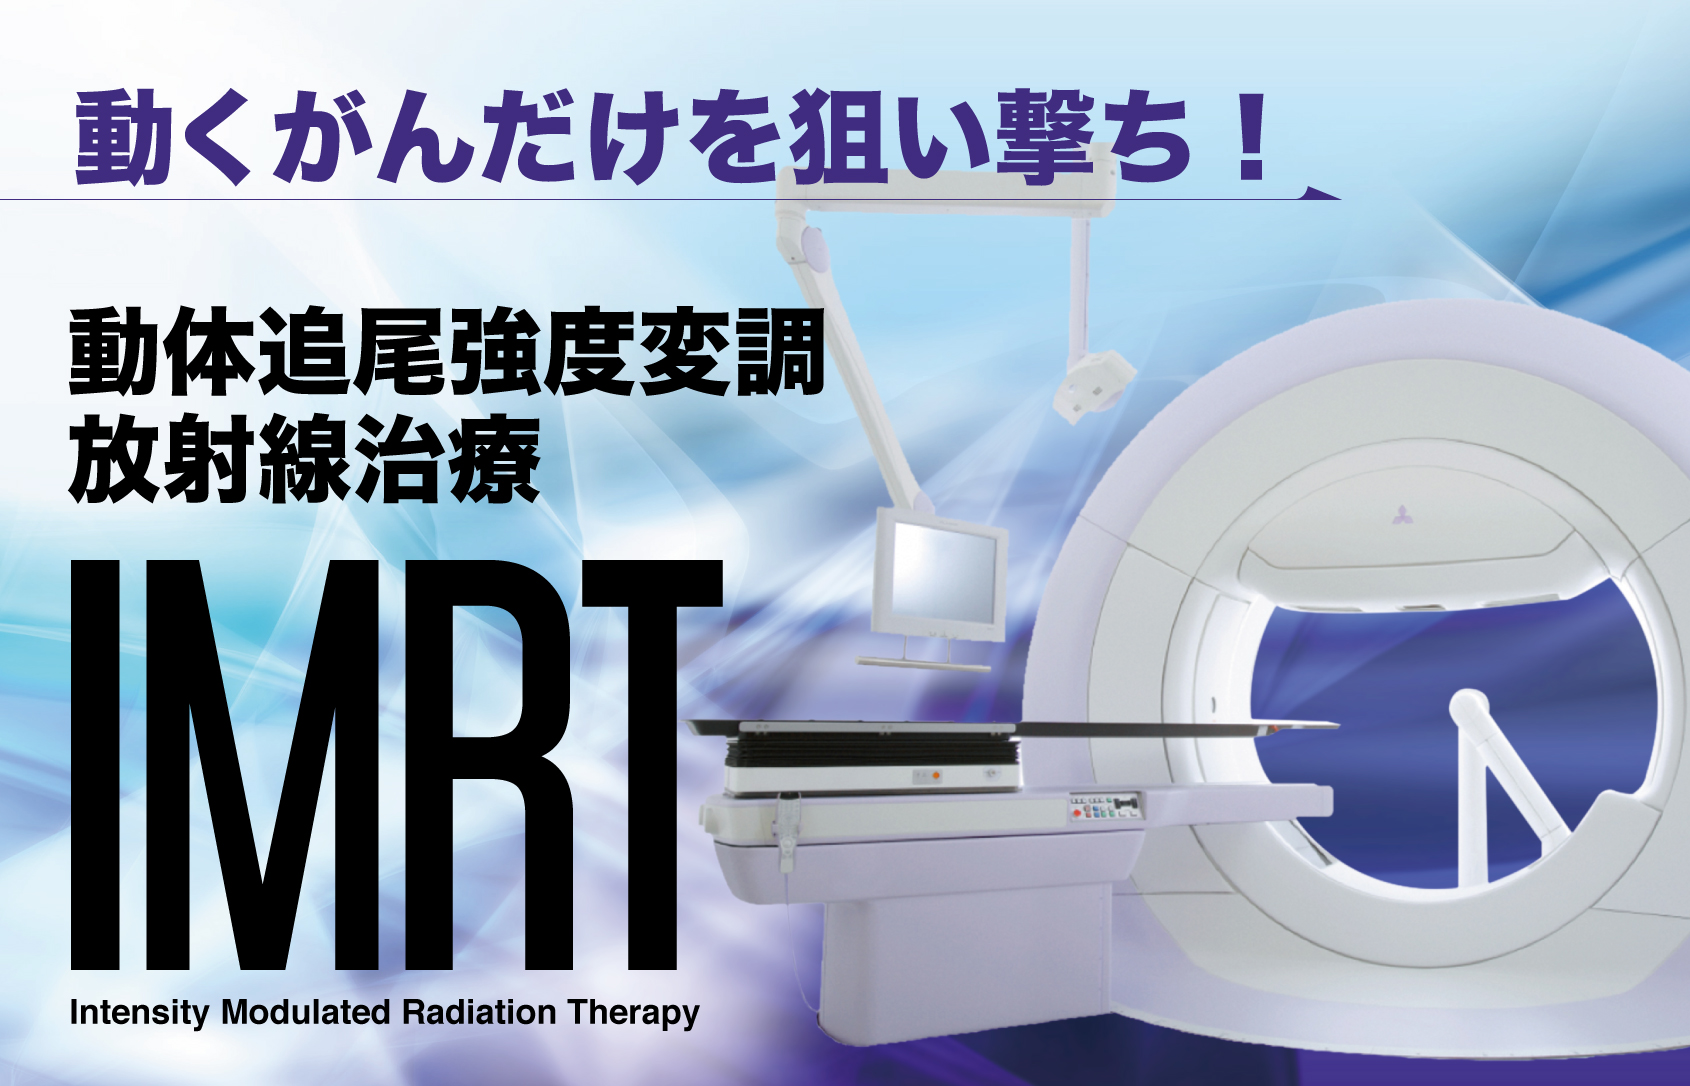 『動くがんだけを狙い撃ち！動体追尾強度変調放射線治療（IMRT）』の特集記事を配信中。